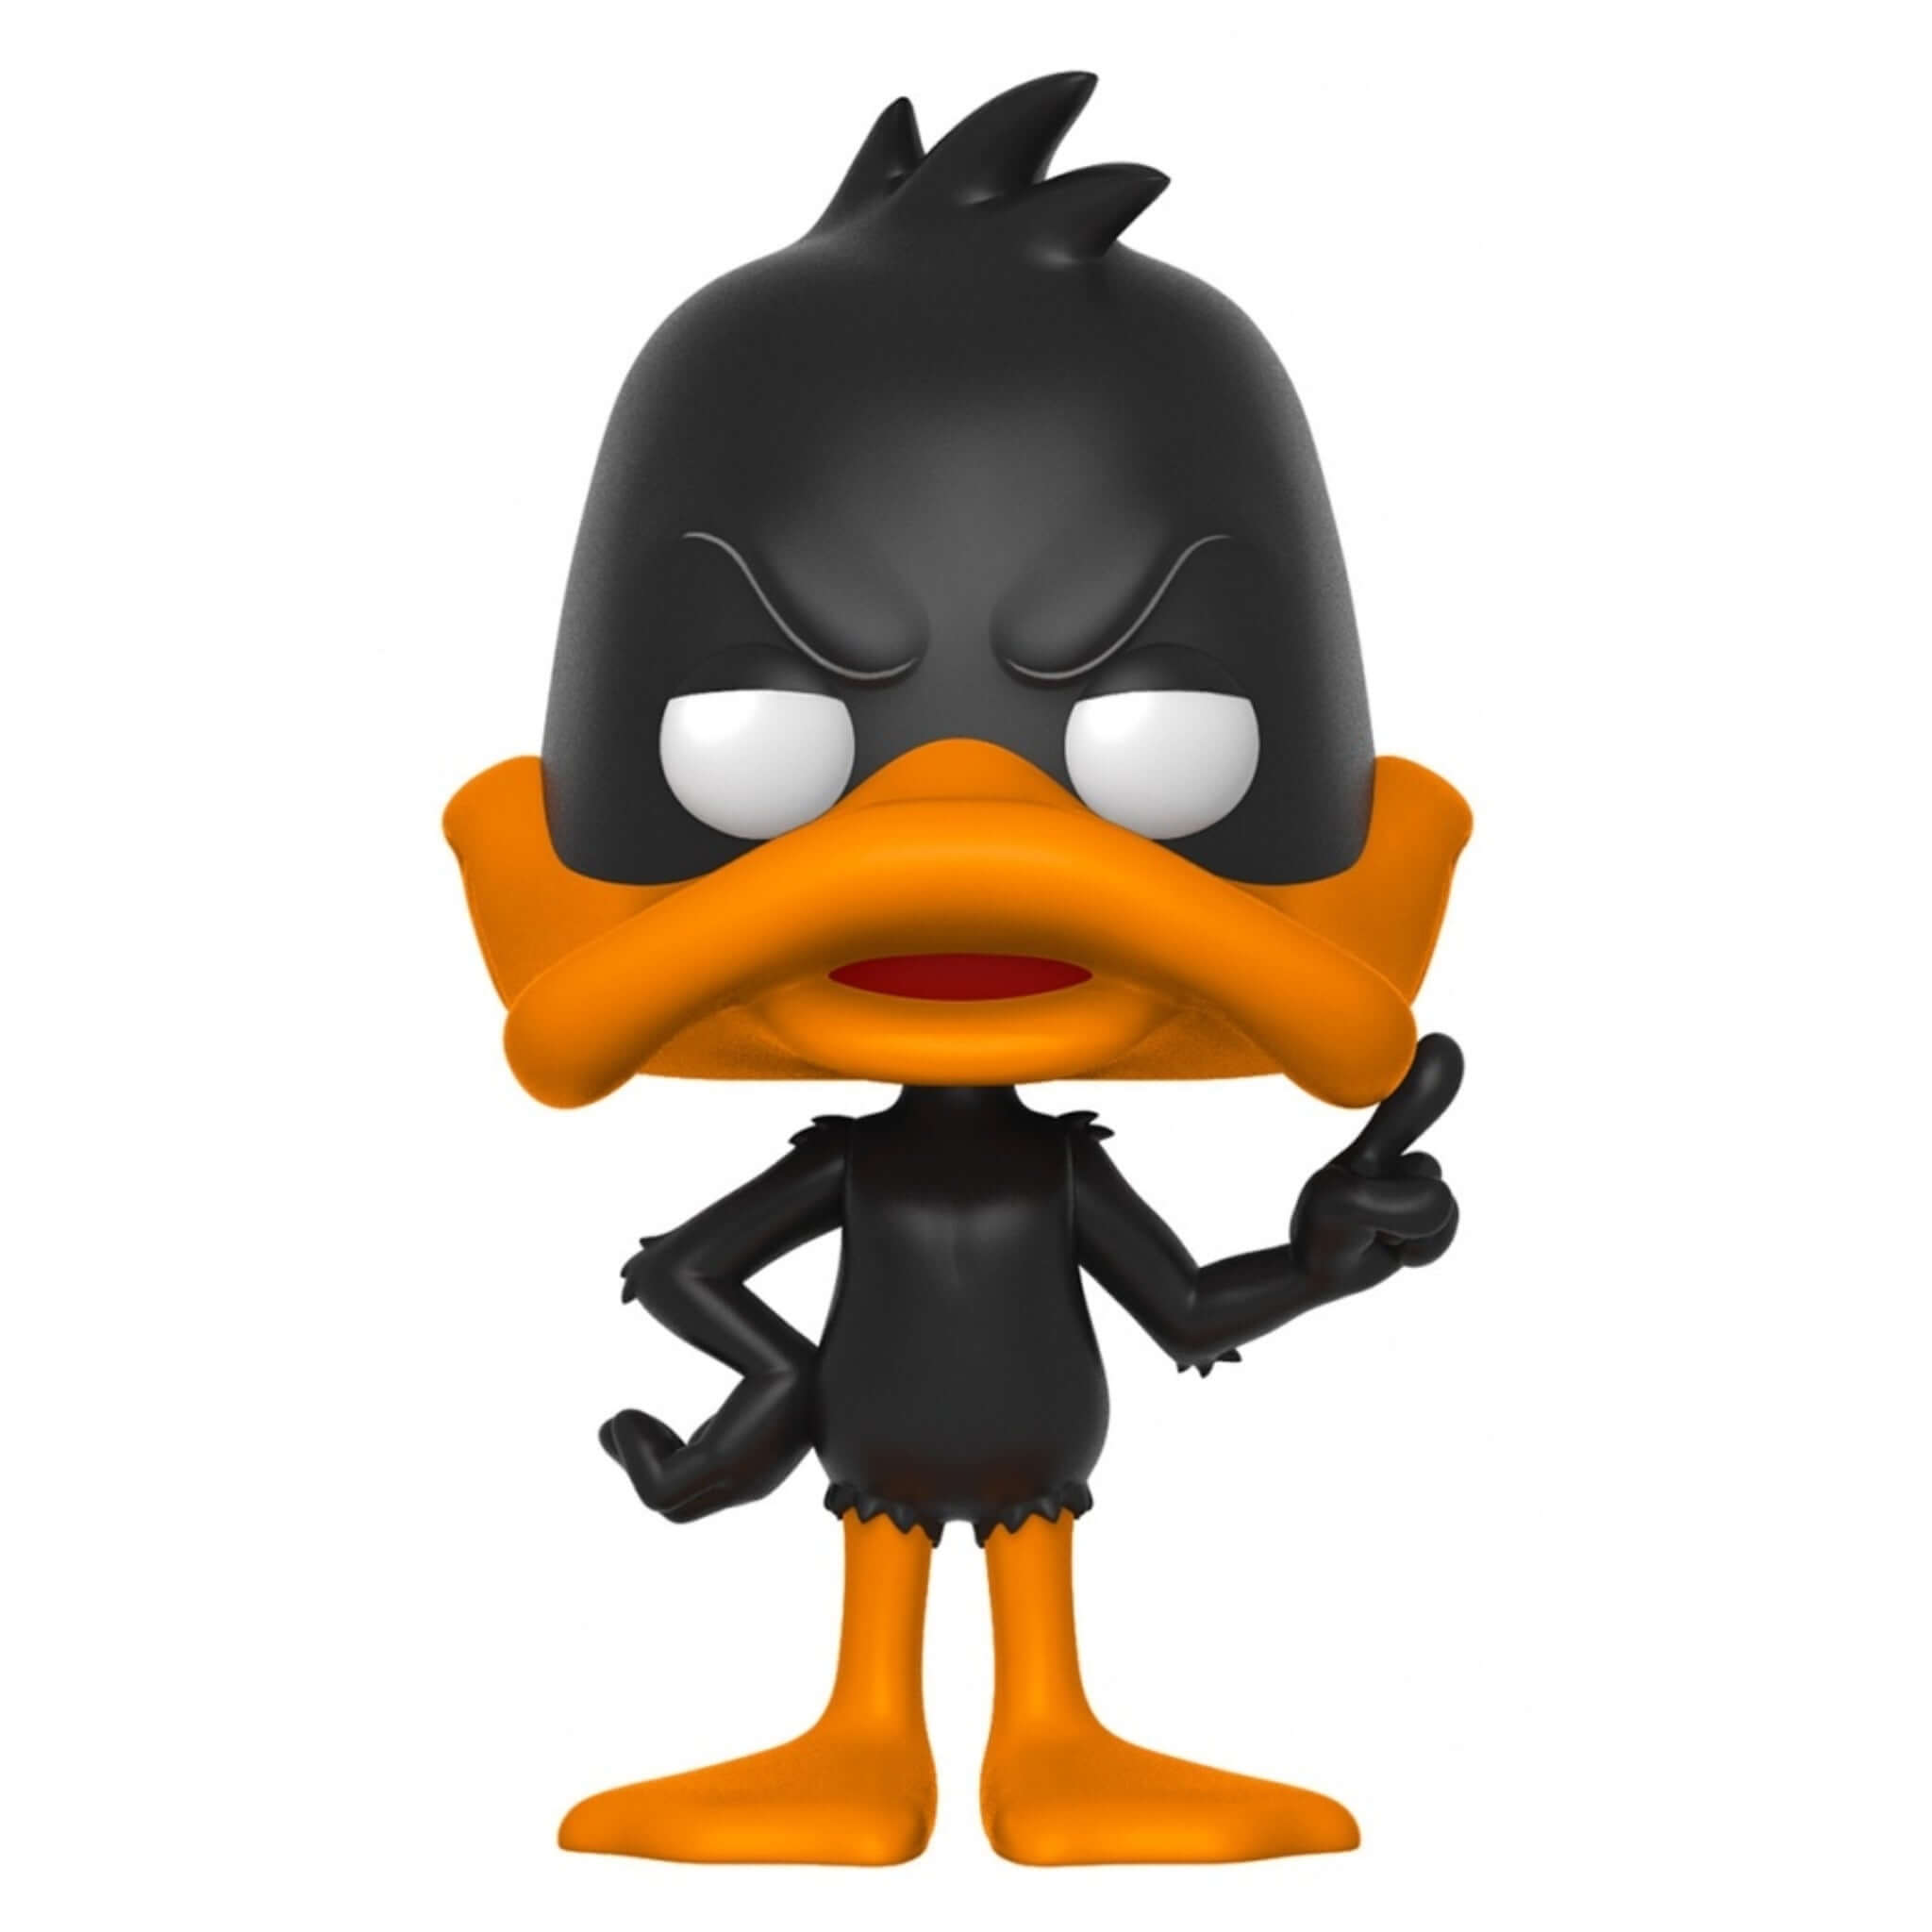 Daffy Duck Funko Pop!-Jingle Truck Toys